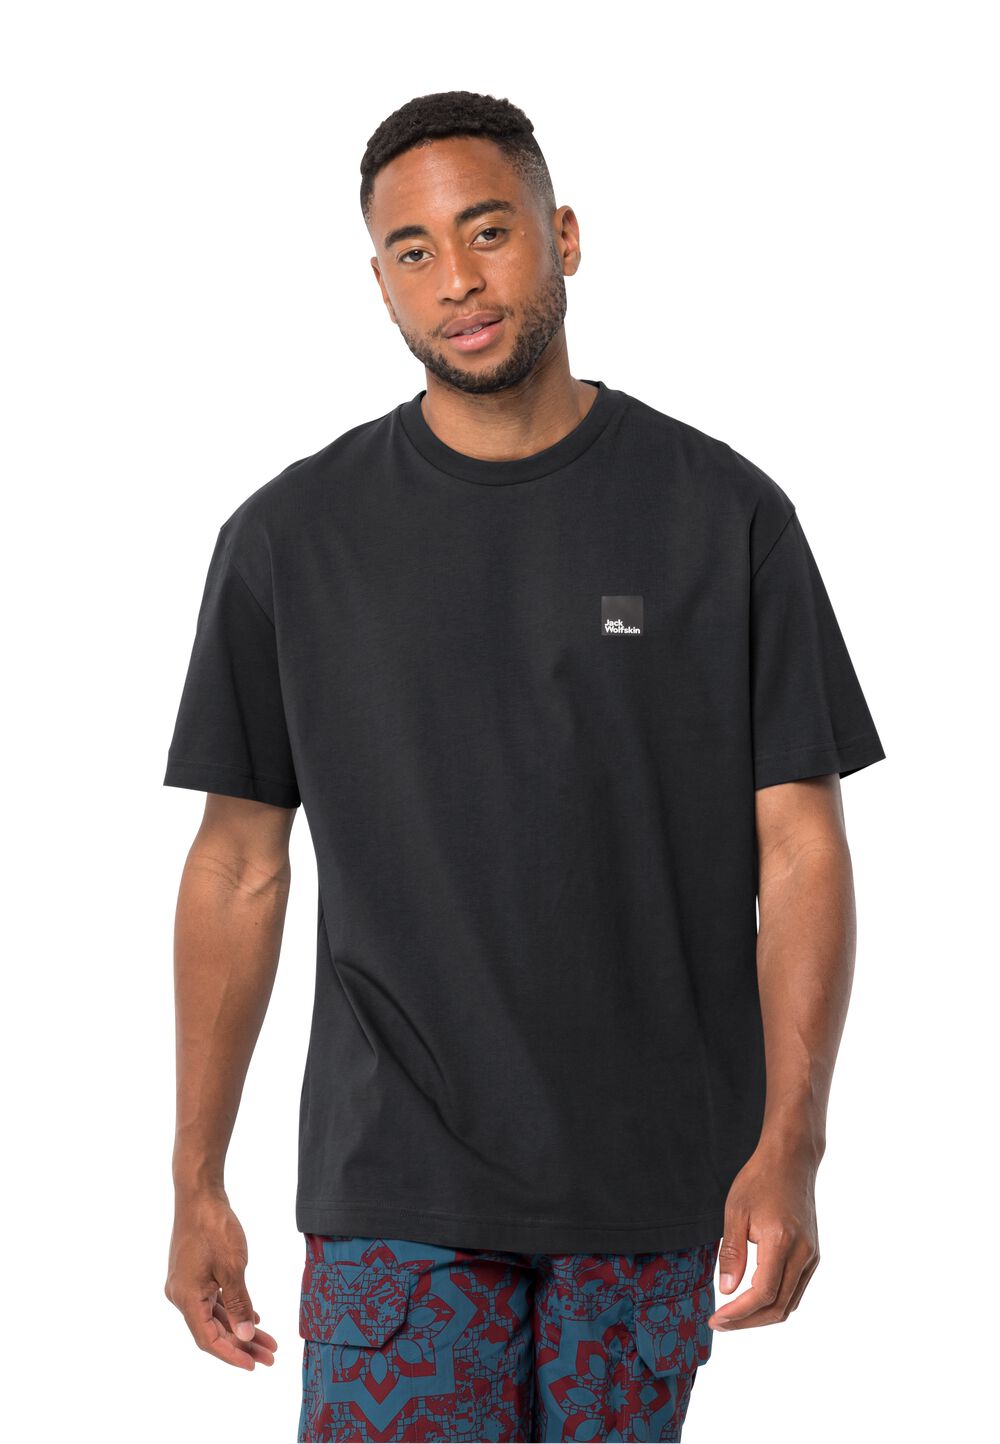 Jack Wolfskin Eschenheimer T-Shirt Unisex T-shirt aus Bio-Baumwolle XS schwarz granite black